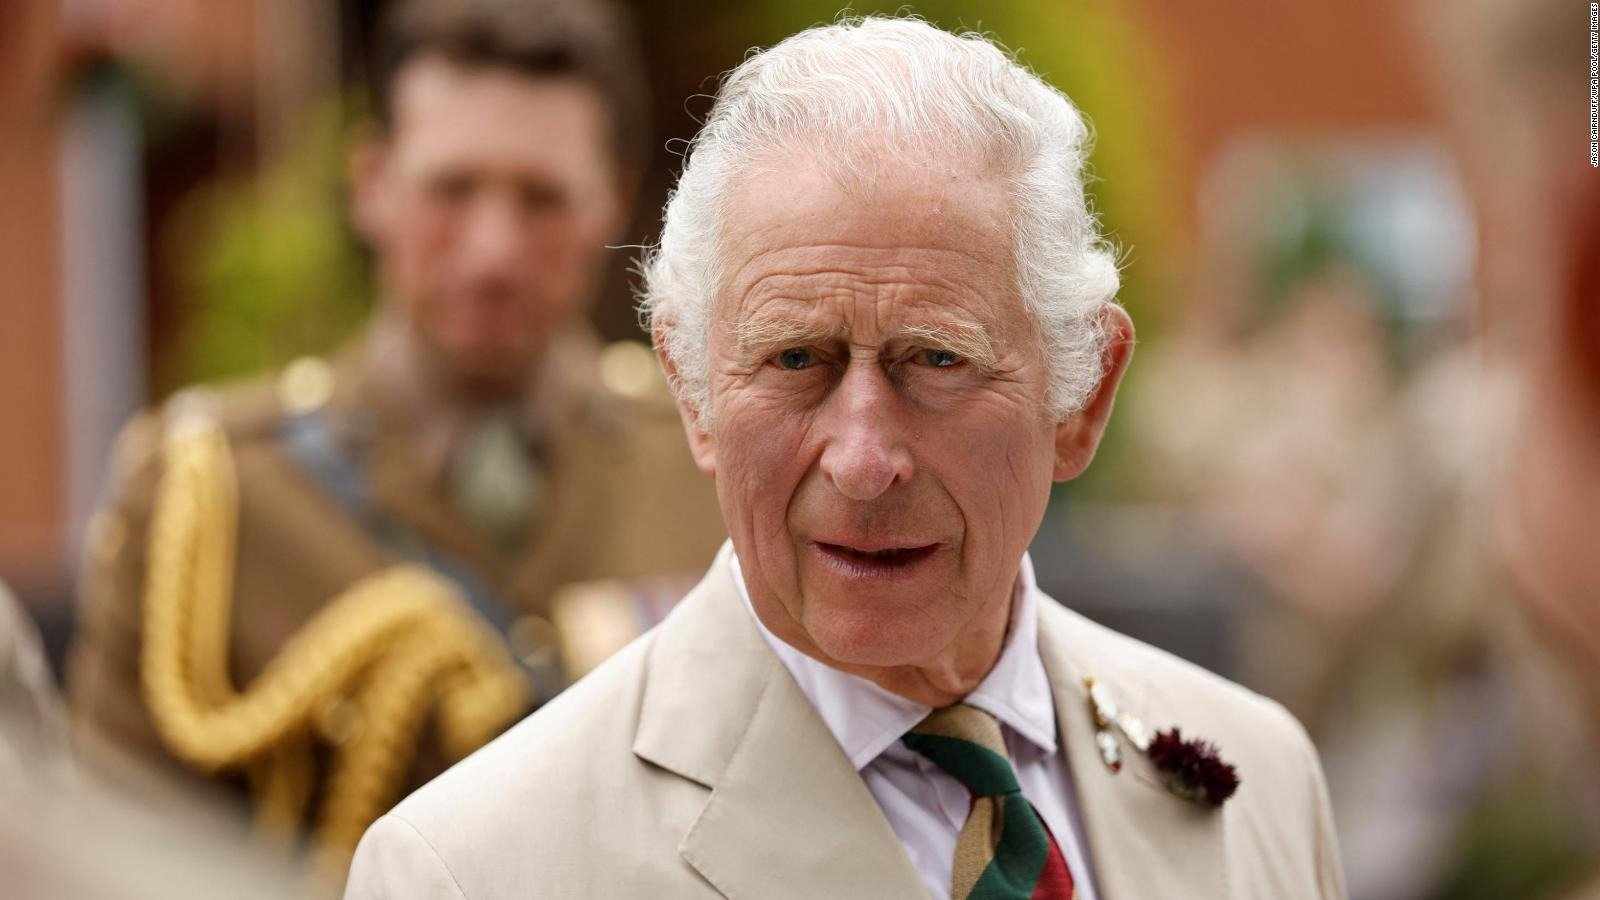 Carles III vol treure-li Archie i Lilibet a Meghan Markle